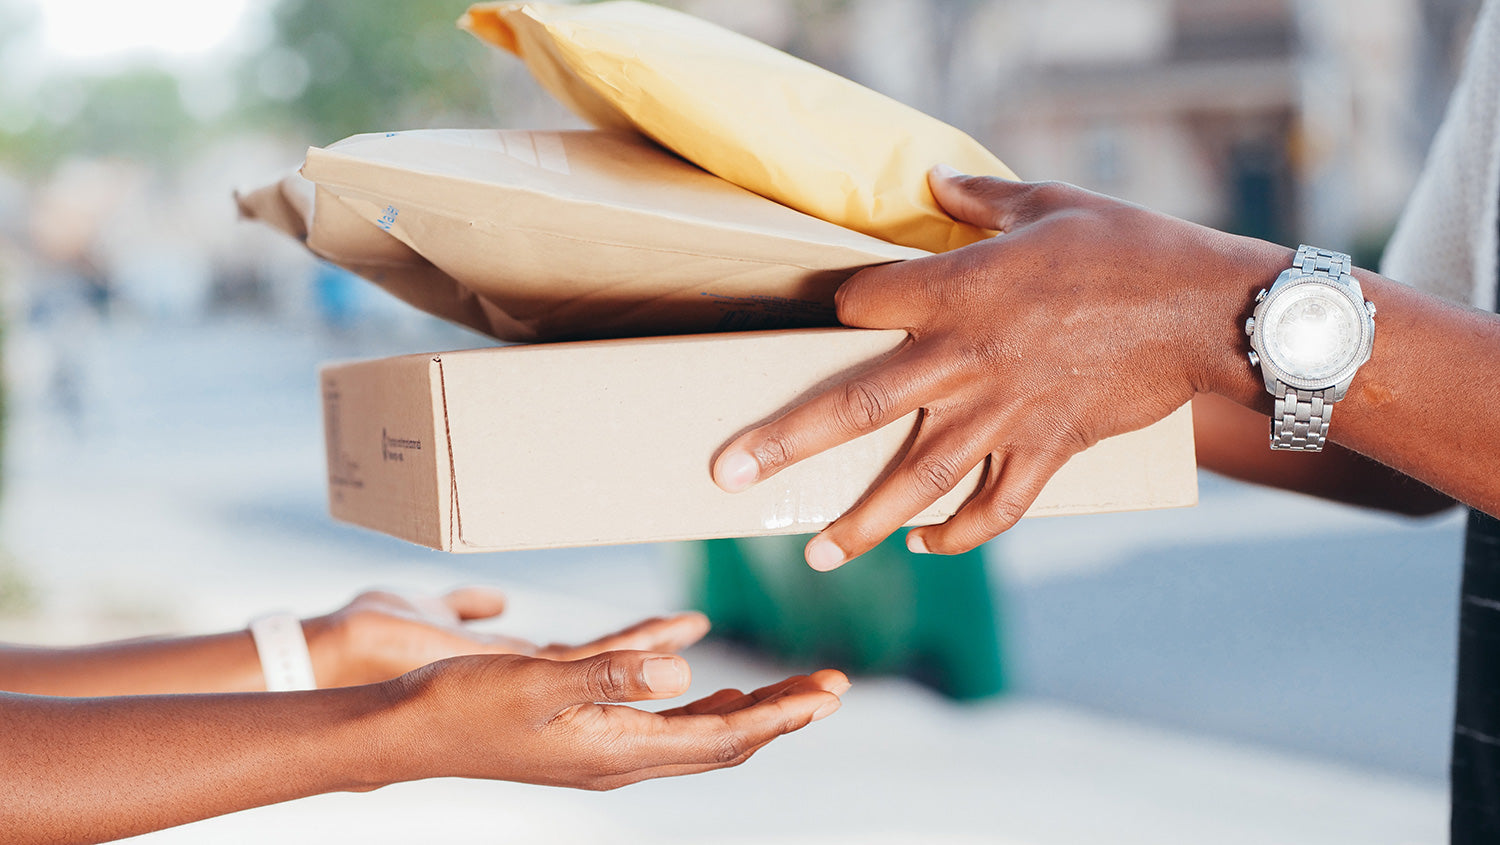 Delivering parcels - Cargo Packaging